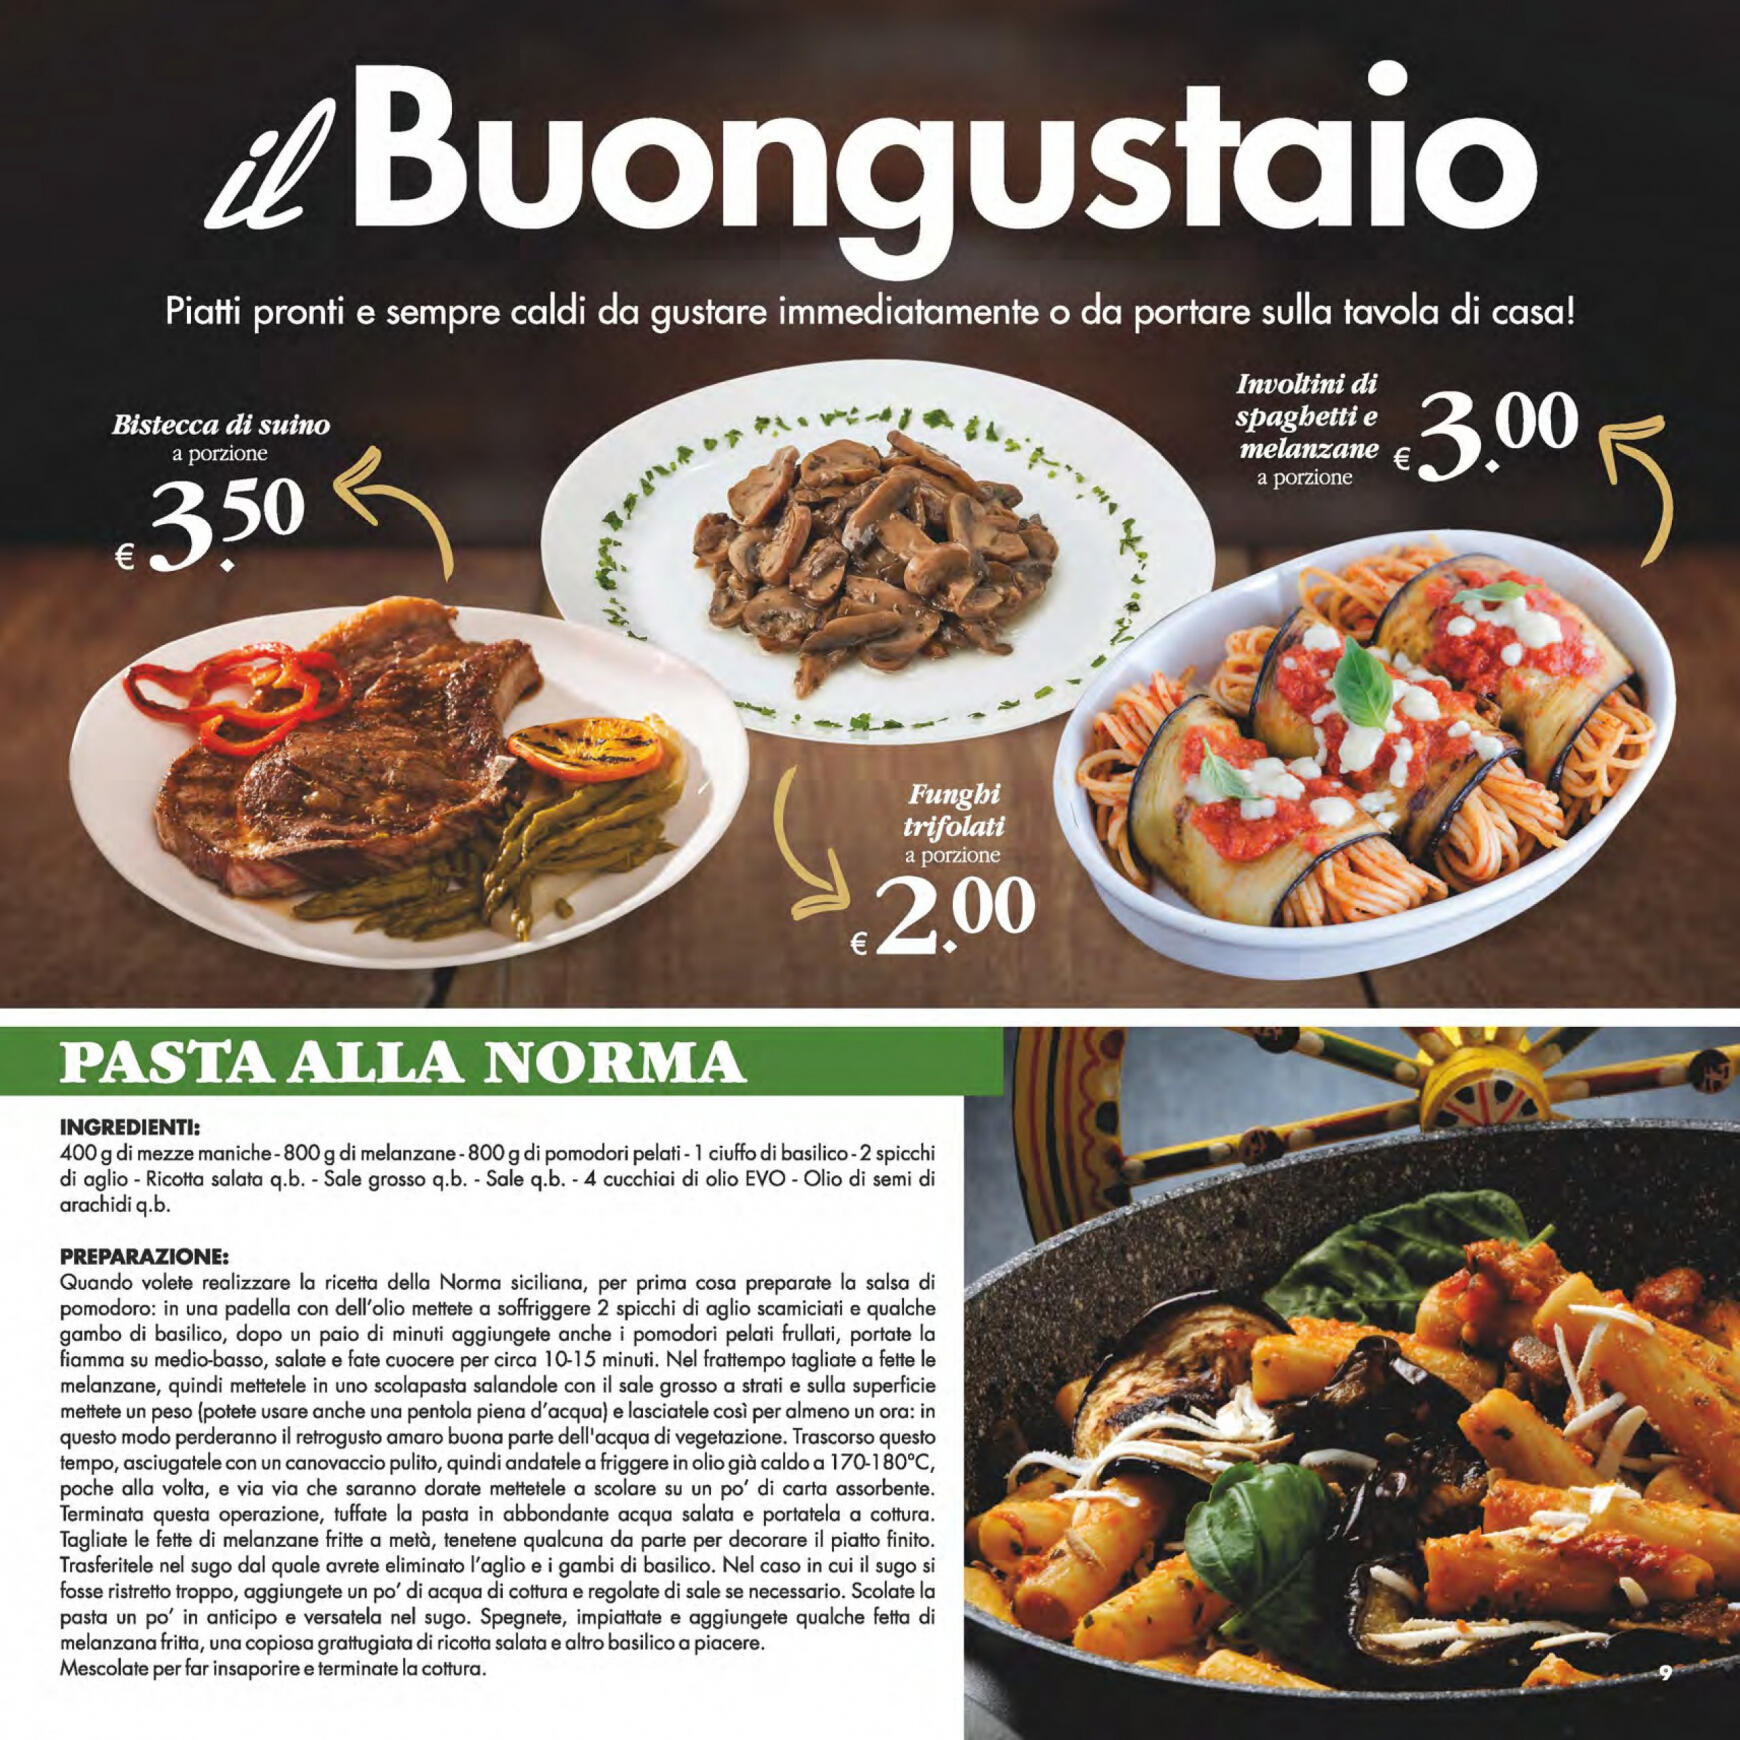 deco - Nuovo volantino Decò - Gourmet 14.05. - 23.05. - page: 9